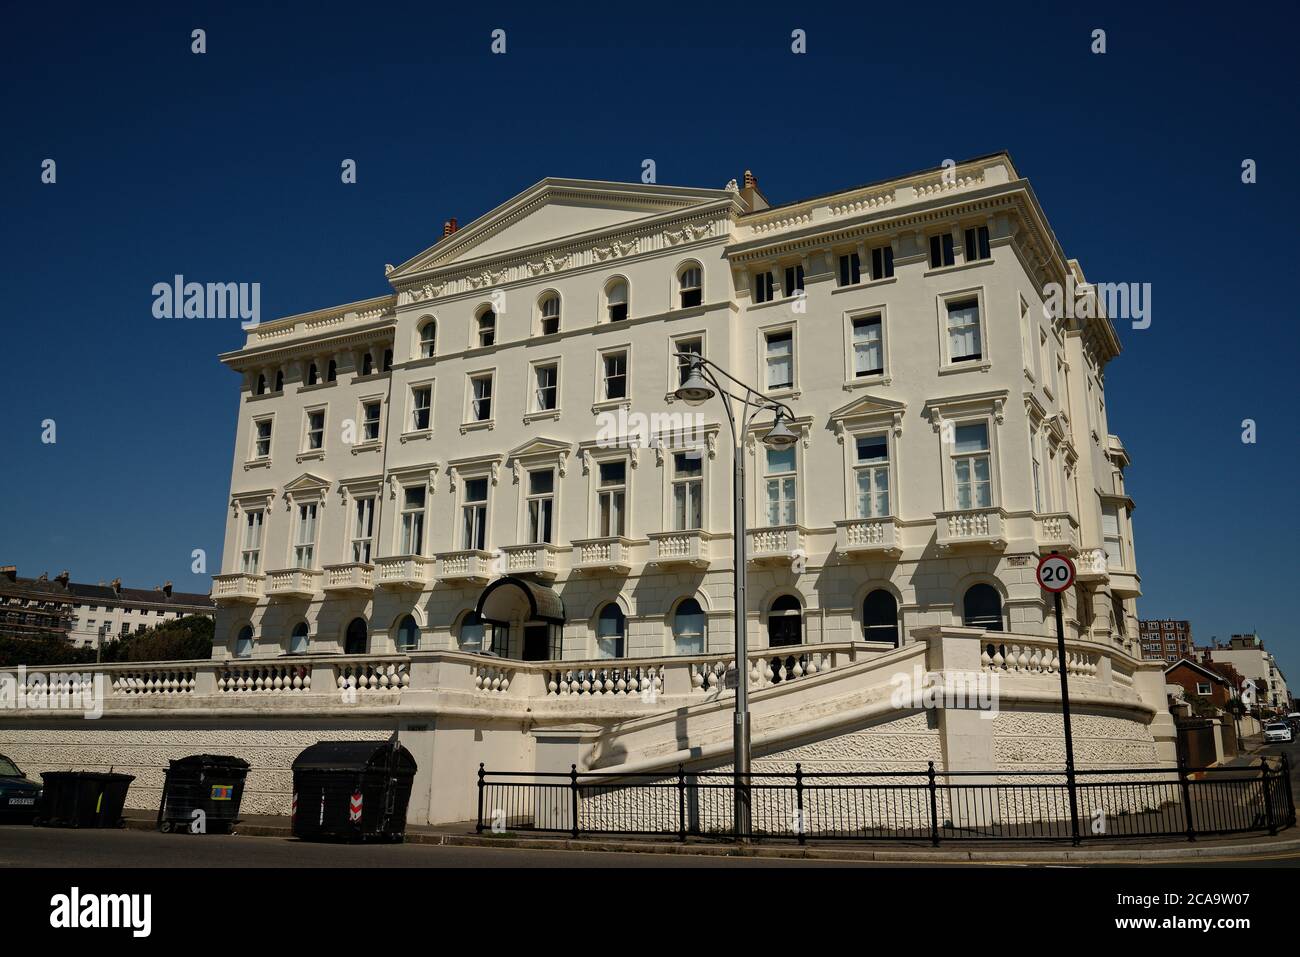 Brighton propiedad frente al mar. Yeso de estuco blanco Arquitectura palladiana. Foto de stock